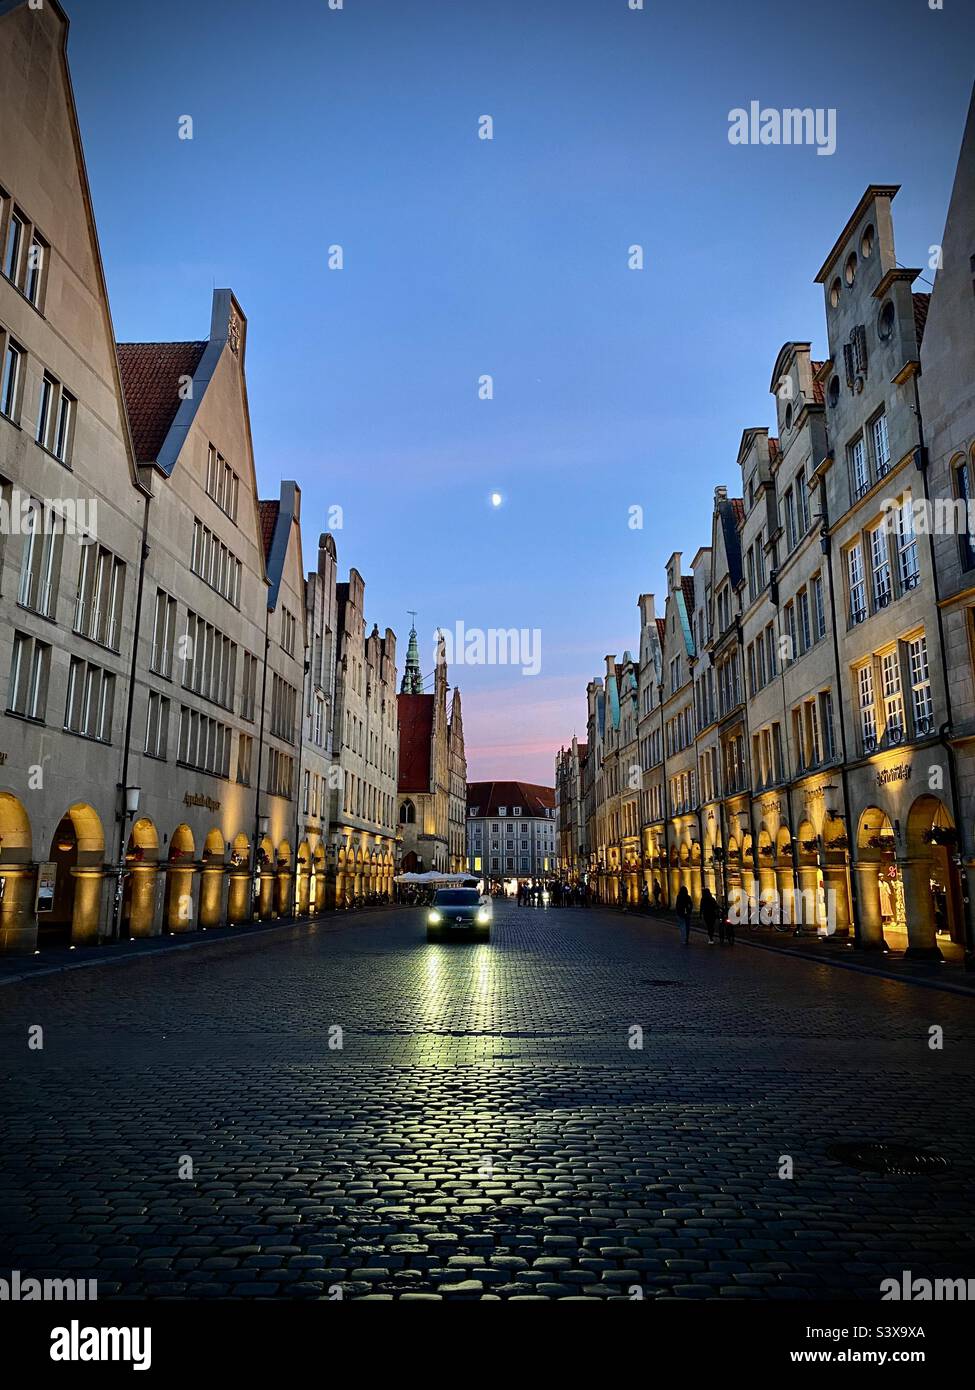 Una sola auto guida giù per una strada acciottolata al crepuscolo nella città vecchia della città tedesca di Munster. Oscurità ai margini della città. Nel retrogusto della luna del tramonto. Come una scena da un film spia. Foto Stock